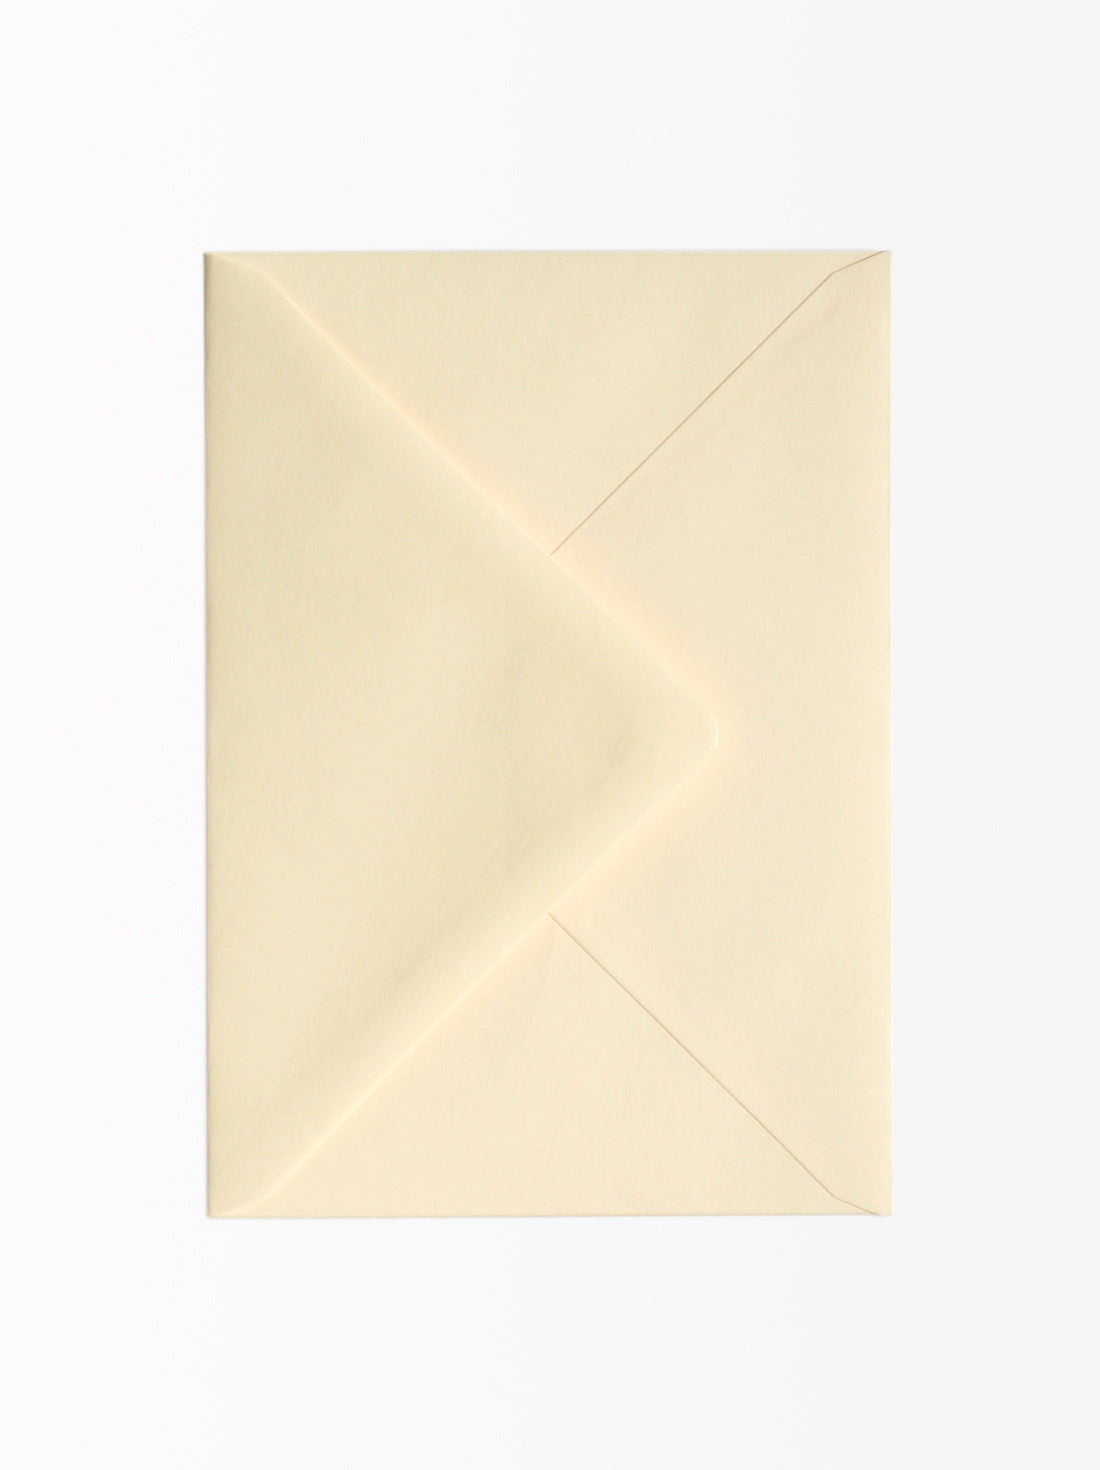 Off-white envelope